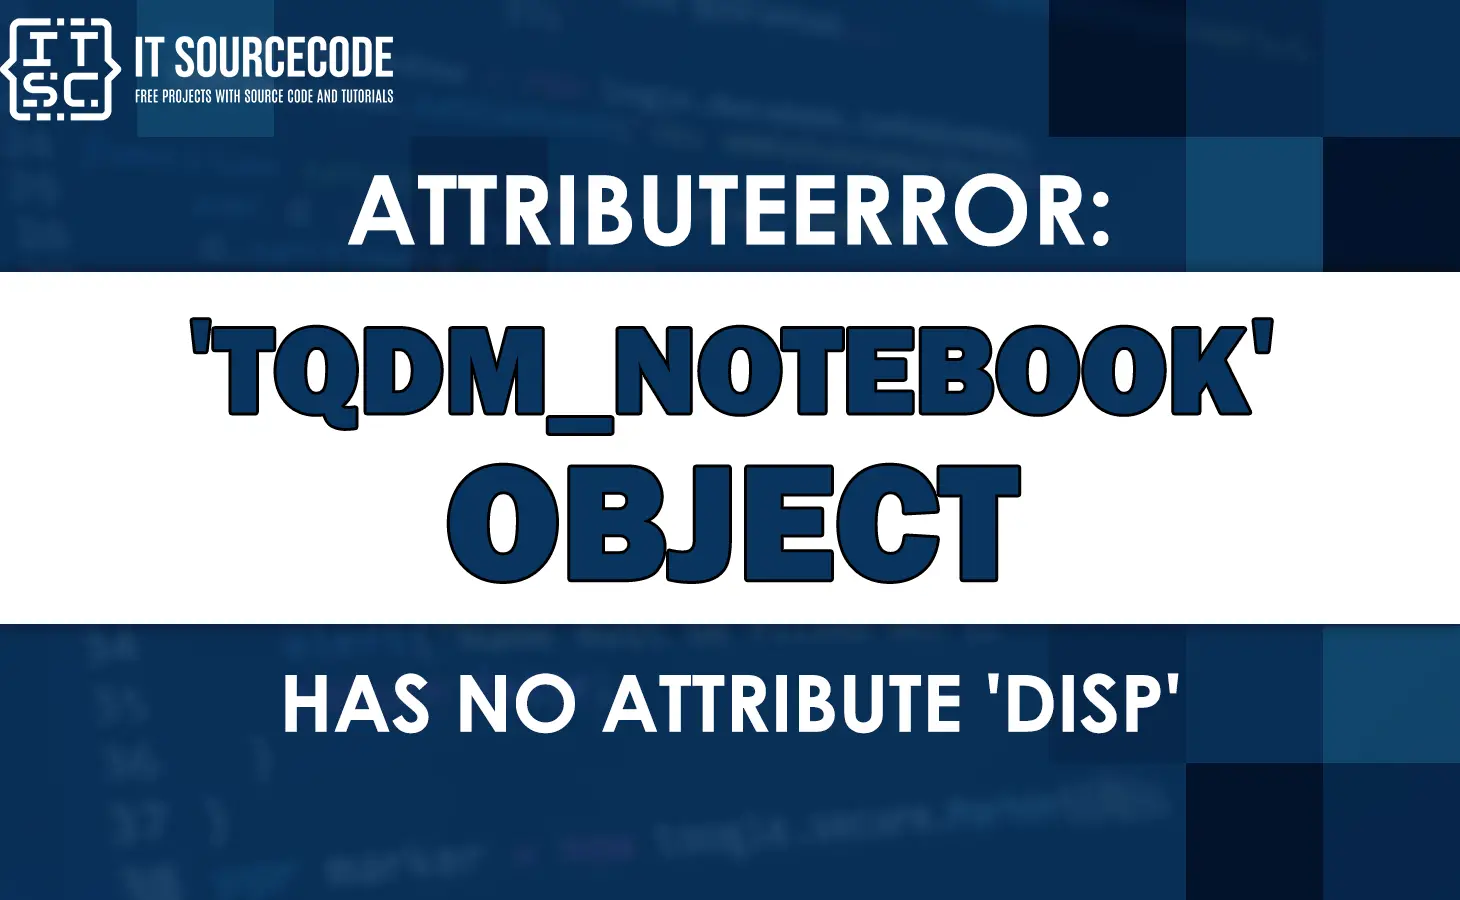 Attributeerror: tqdm_notebook object has no attribute disp